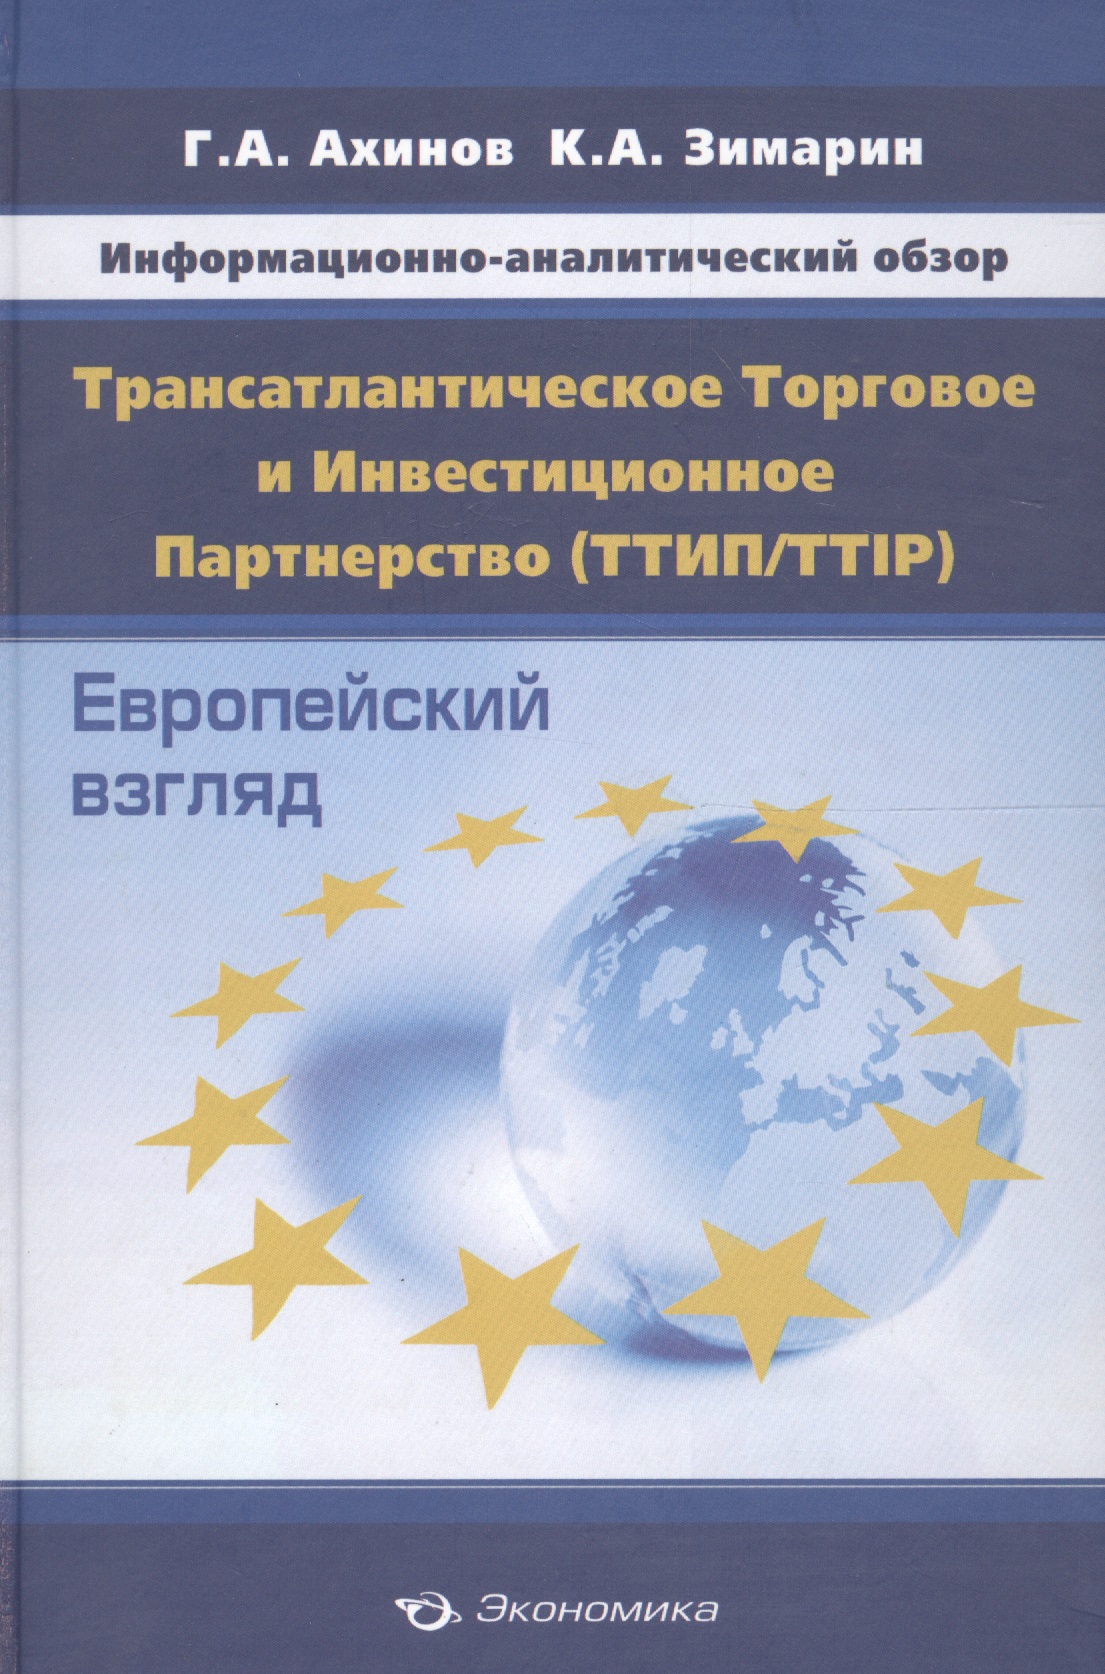 Ахинов Григор Артушевич - Информационно-аналитический обзор "Трансатлантическое Торговое и Инвестиционное Партнерство (ТТИП/TTIP): Европейский взгляд (по материалам Еврокомиссии)